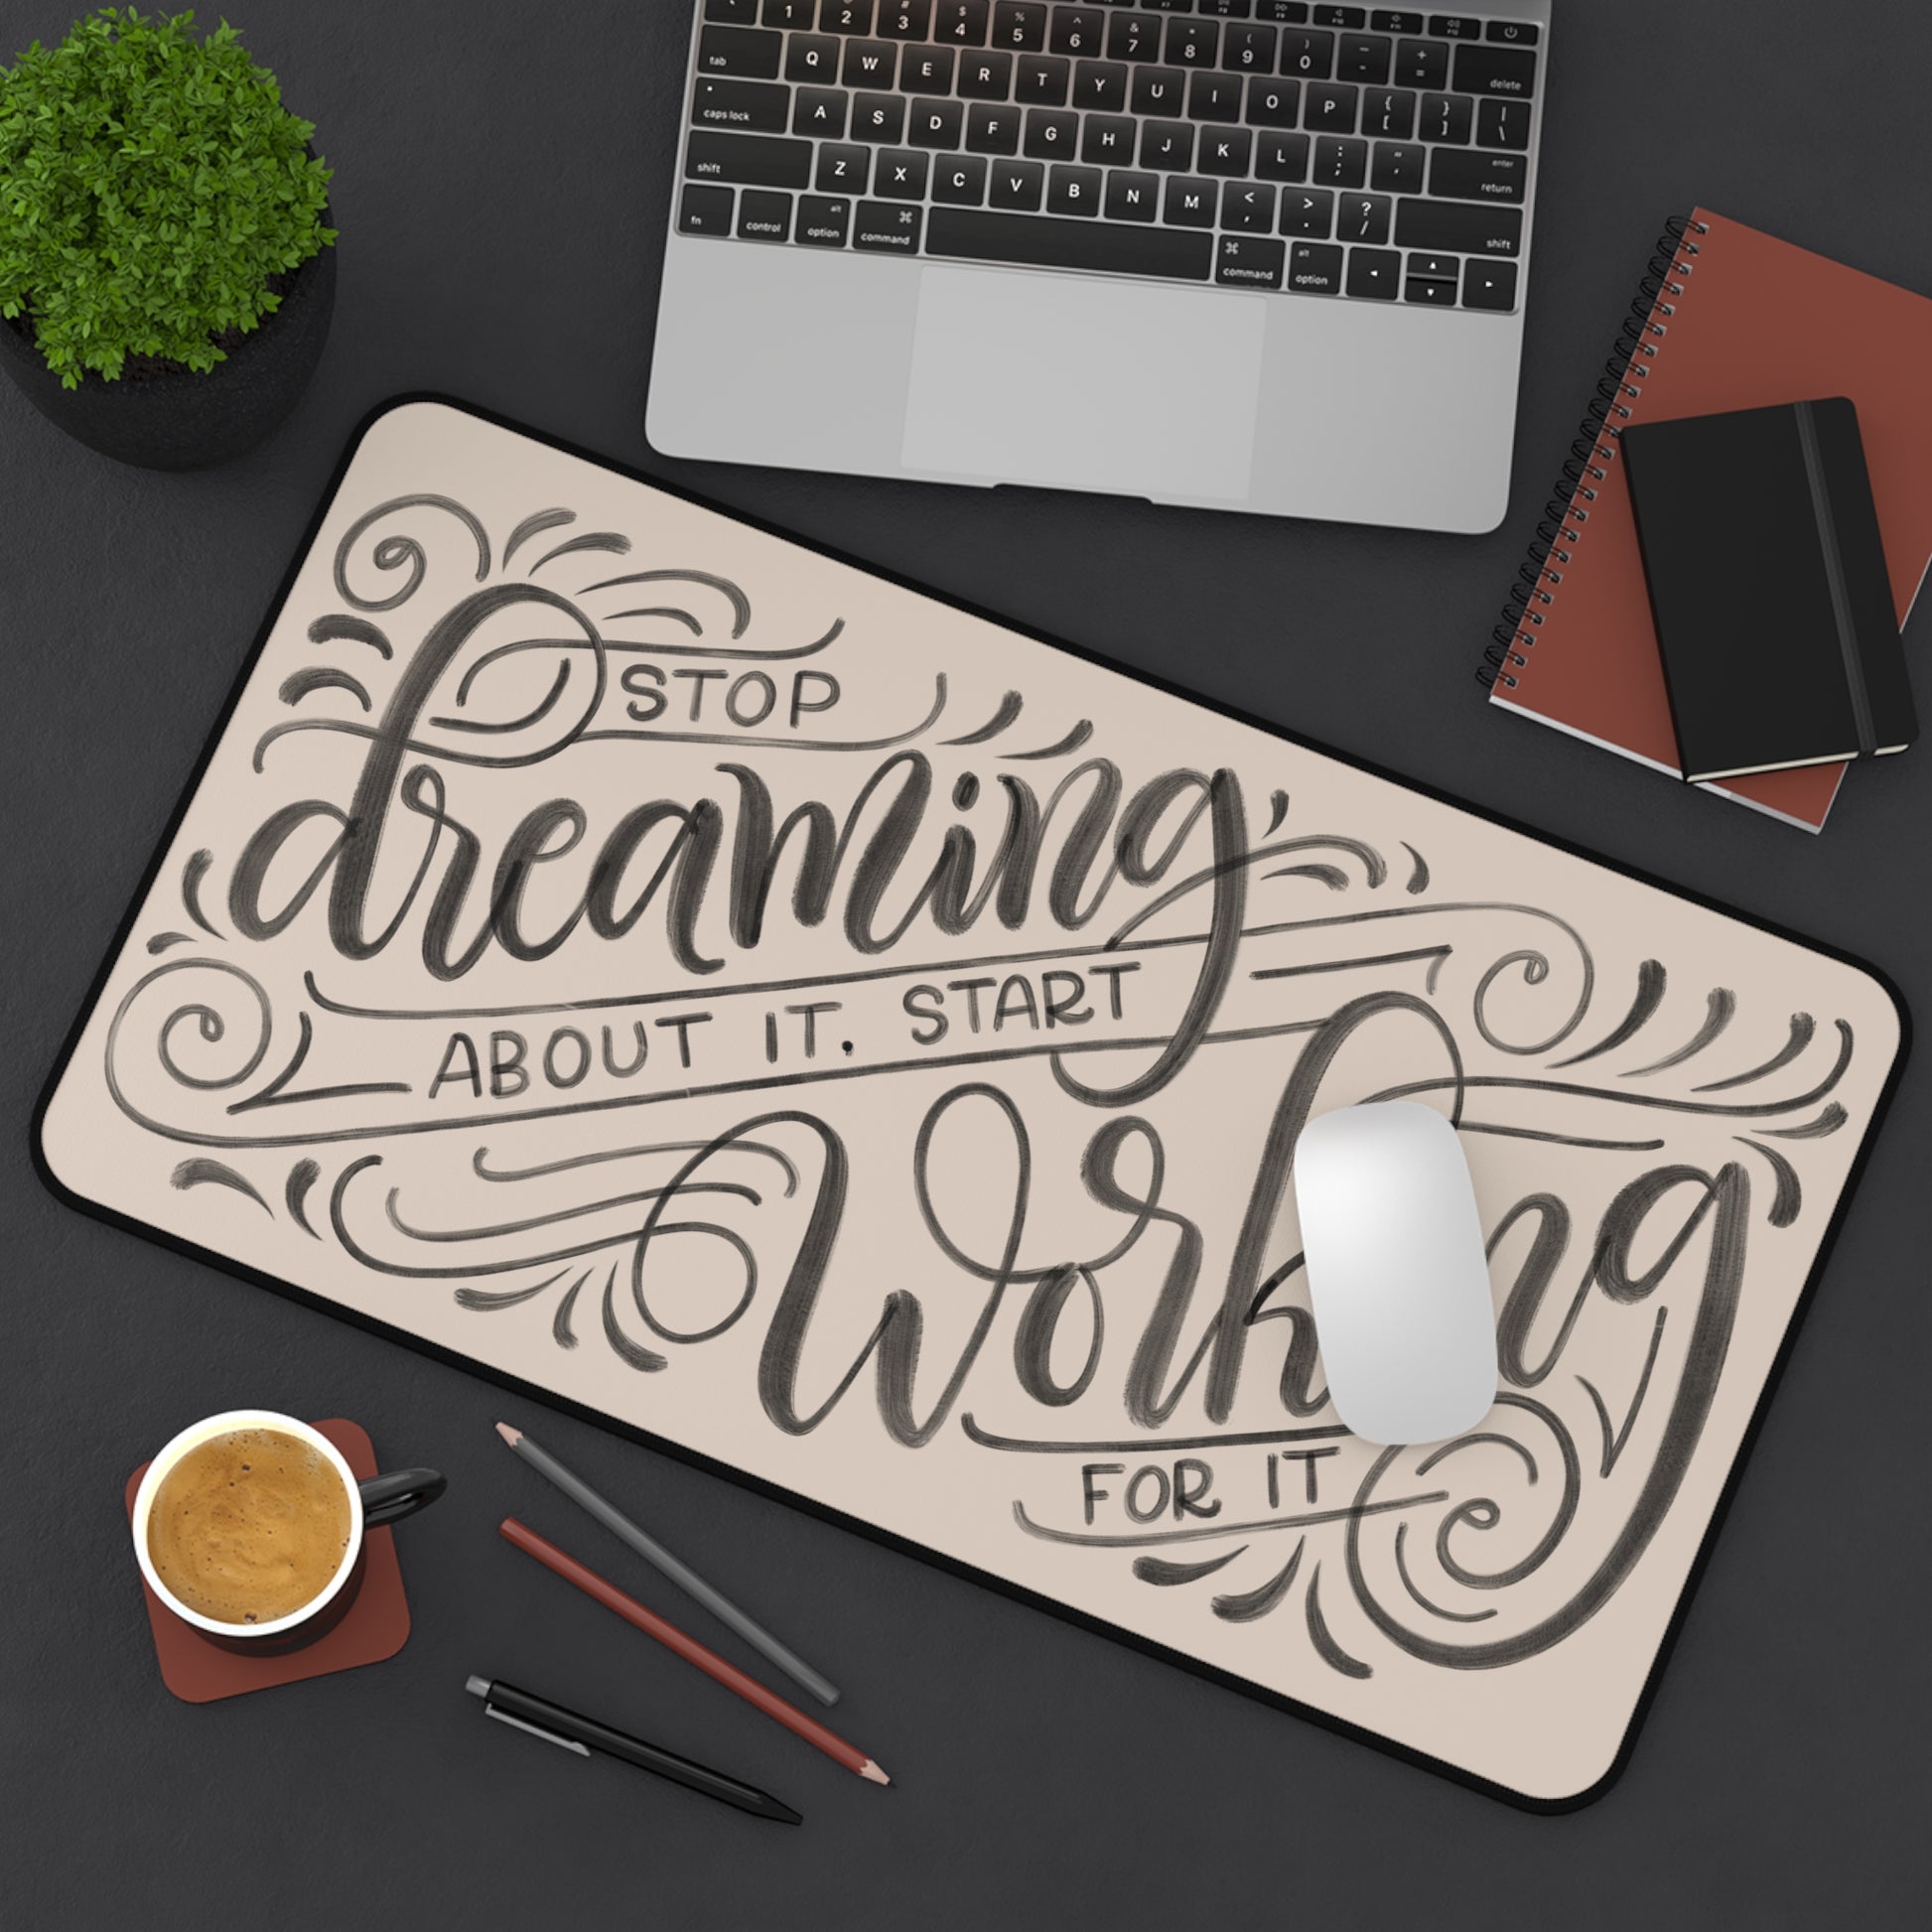 Stop dreaming about it start working for it - Tan Desk Mat - howjoyfulshop